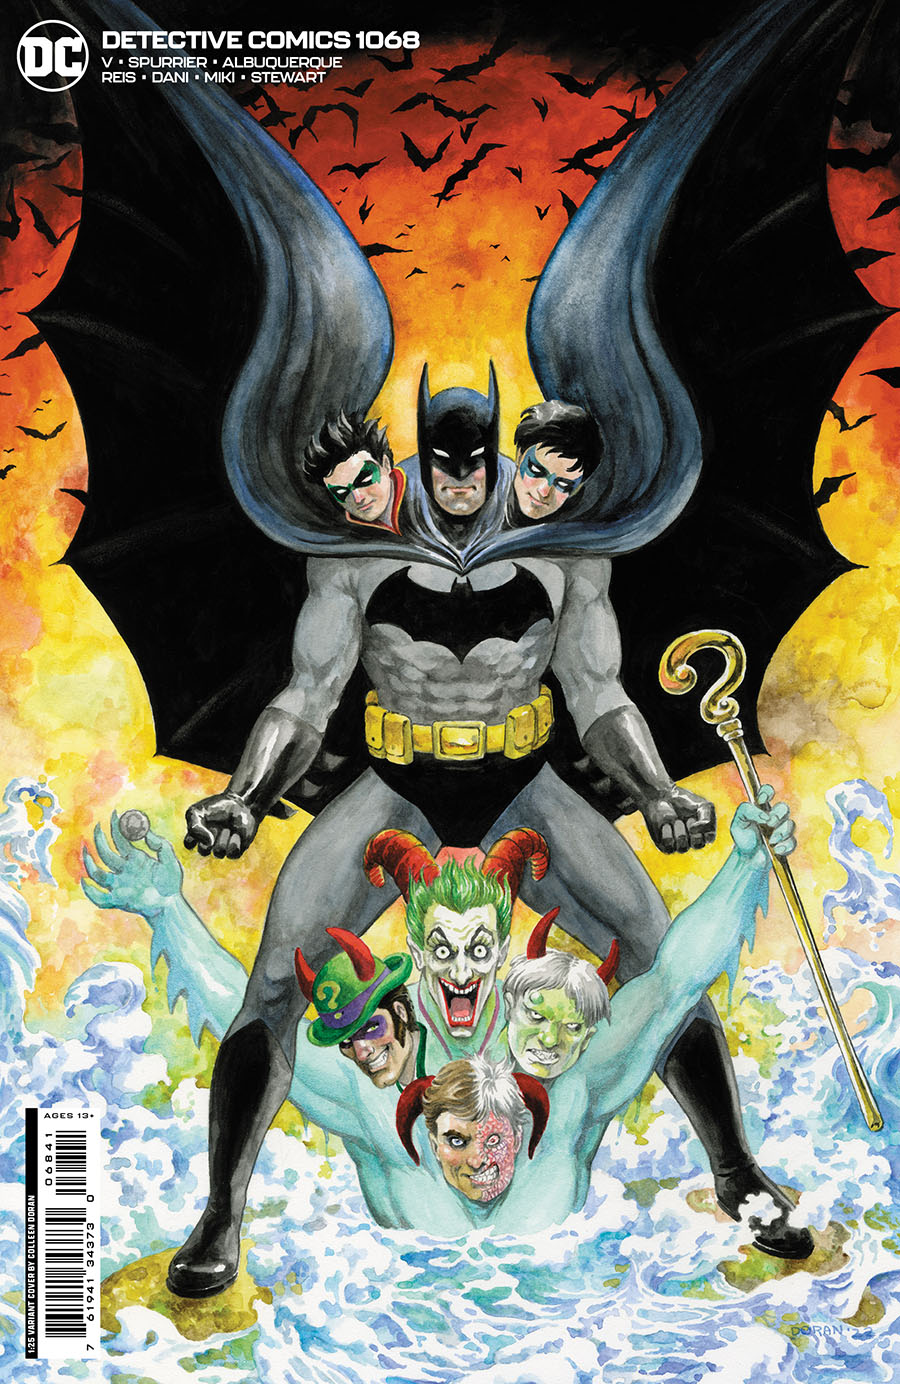 Detective Comics Vol 2 #1068 Cover D Incentive Colleen Doran Card Stock Variant Cover